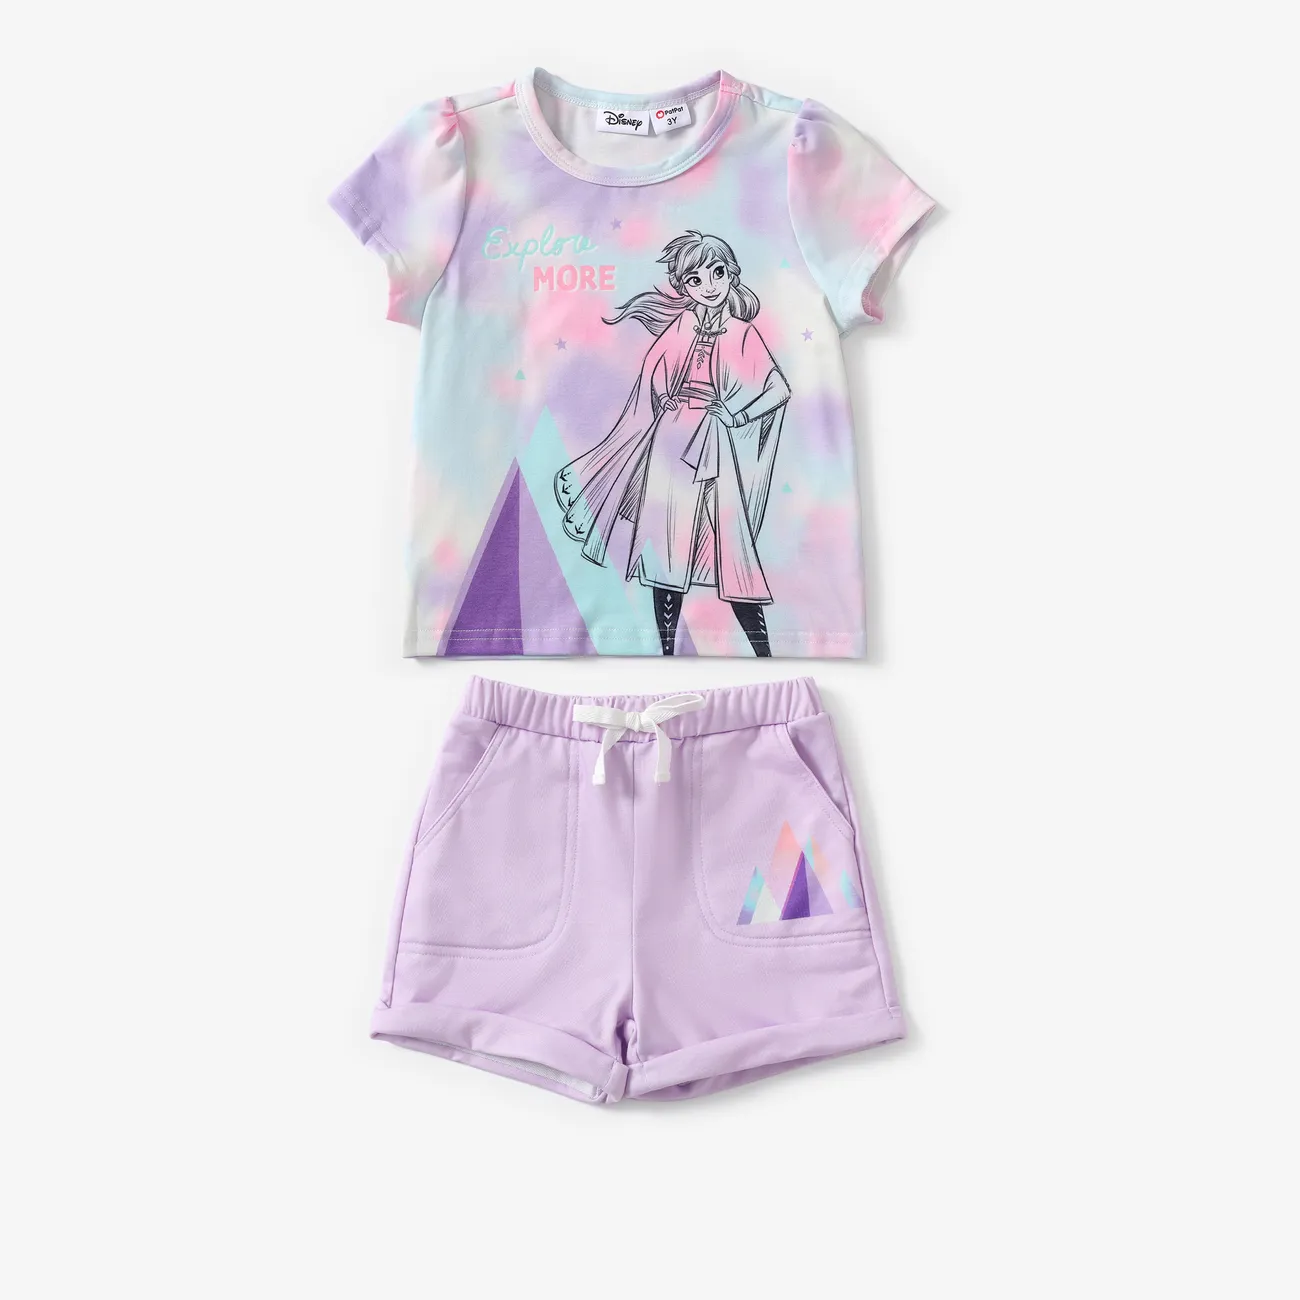 La Reine des neiges de Disney 2 pièces Enfant en bas âge Fille Enfantin ensembles de t-shirts rose-mauve big image 1